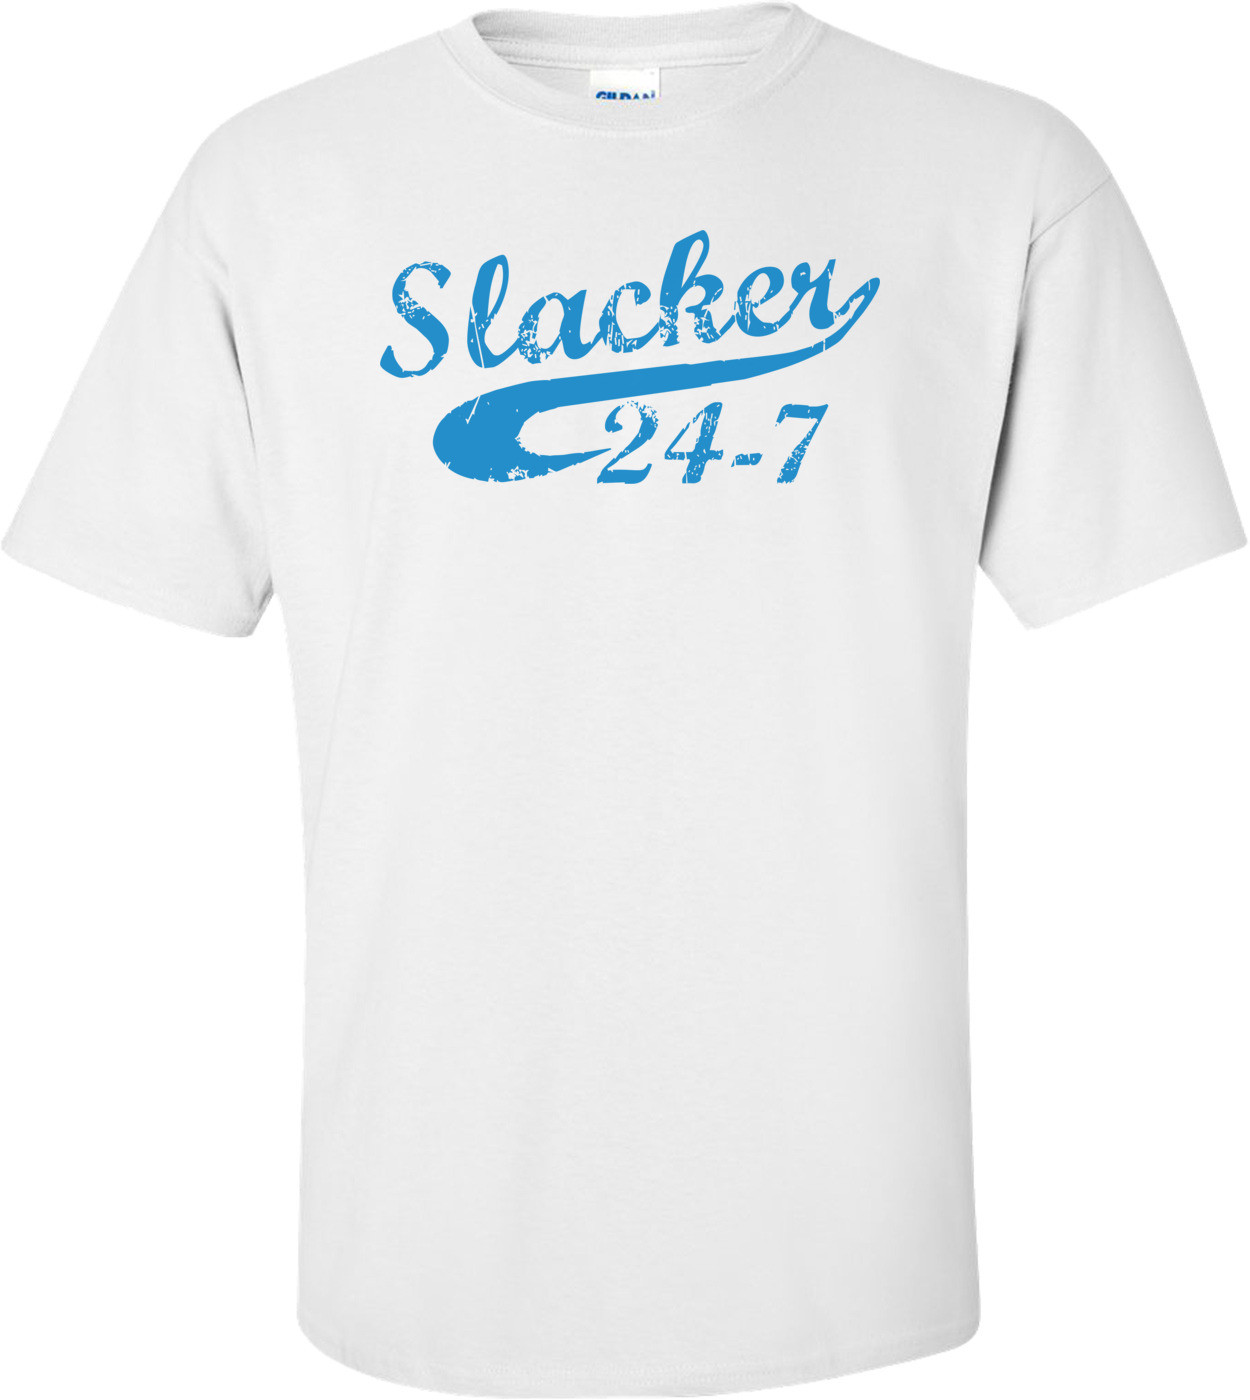 Slacker 24-7